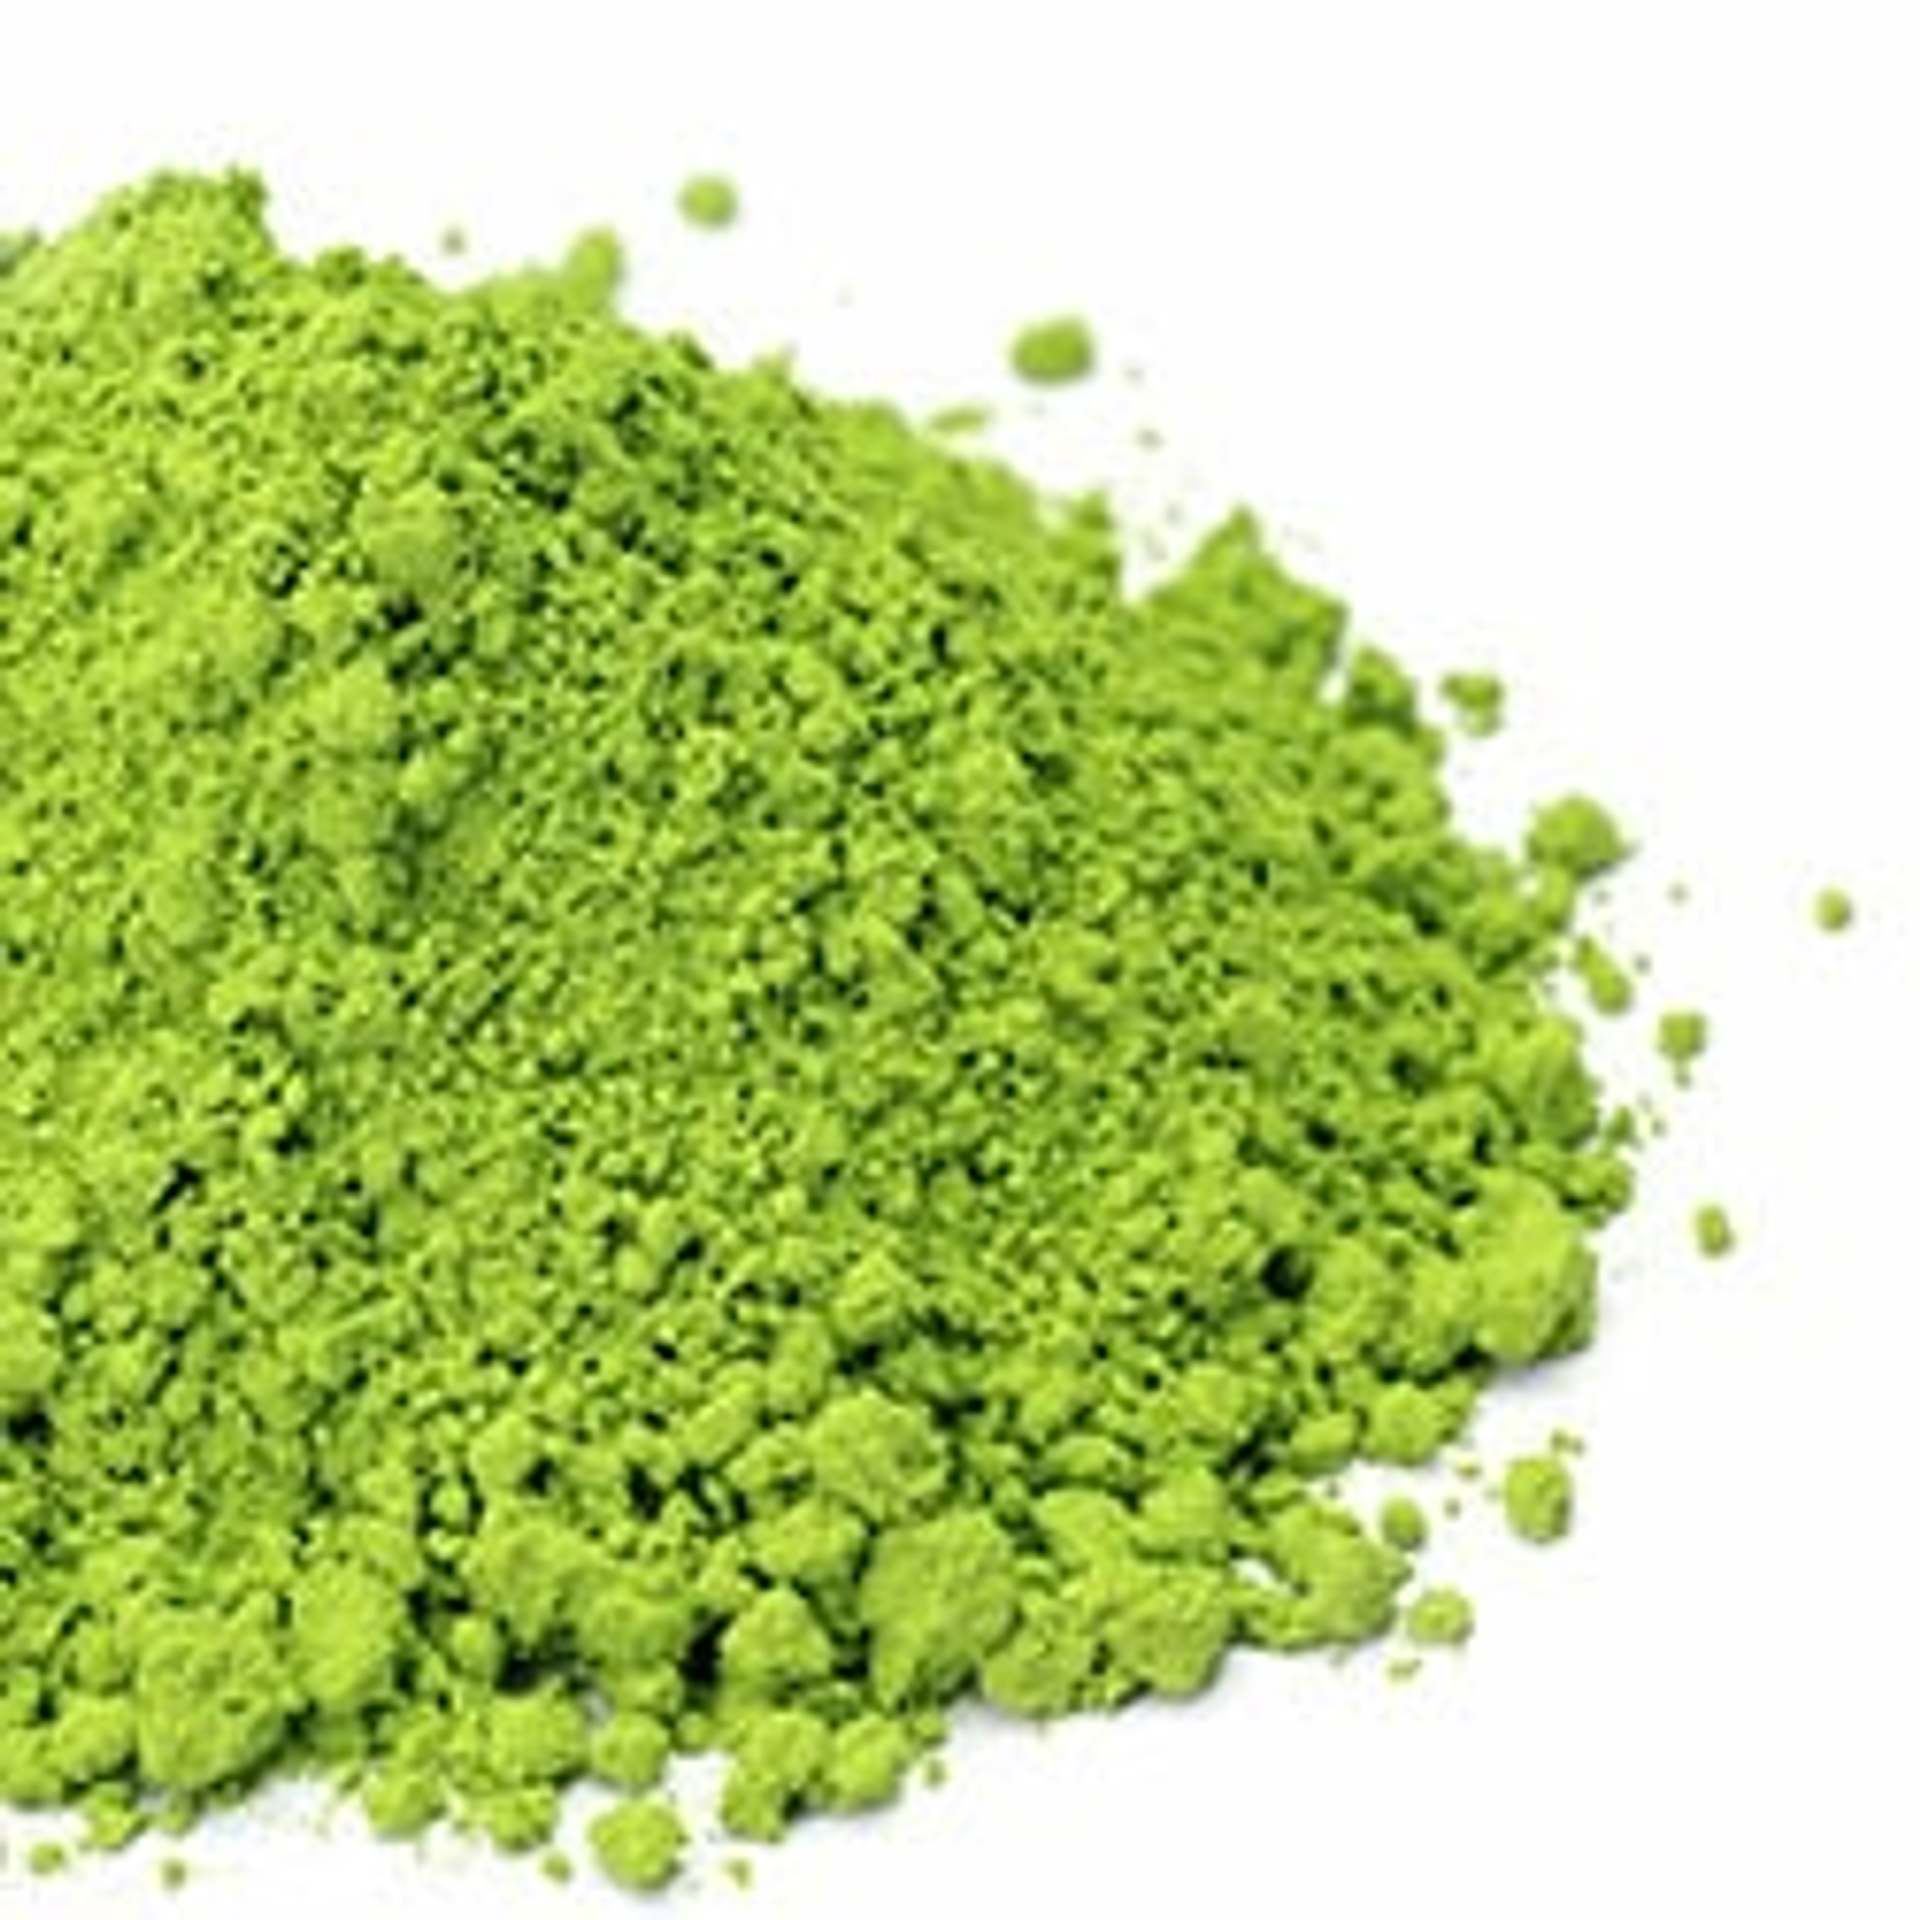 L'erba d'orzo in polvere è naturalmente pura, ricca di sostanze vitali, amminoacidi, bioflavonoidi, antiossidanti e clorofilla.